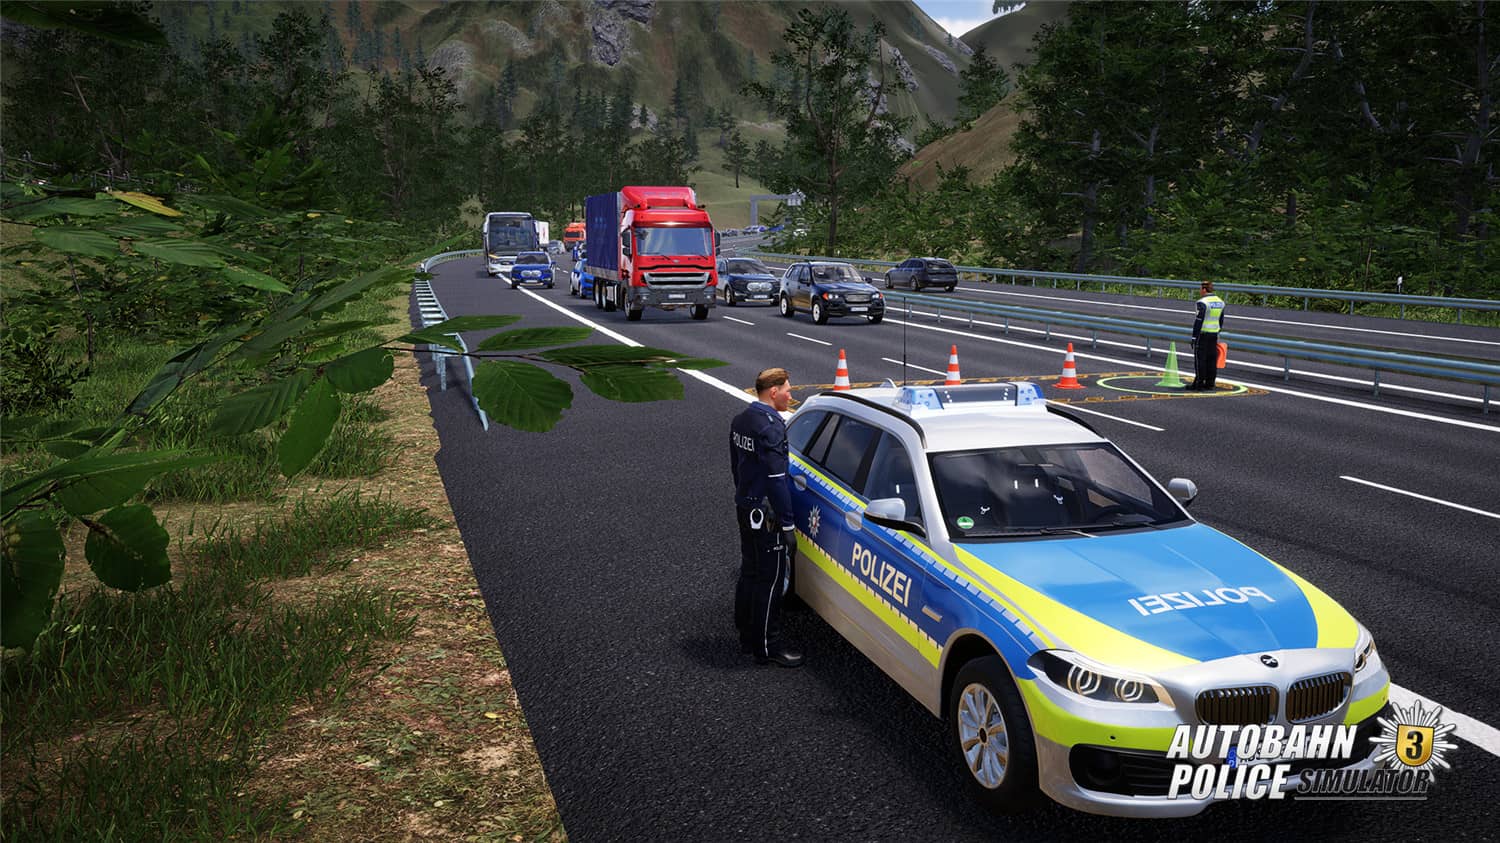 高速公路警察模拟3/Autobahn Police Simulator 3插图3